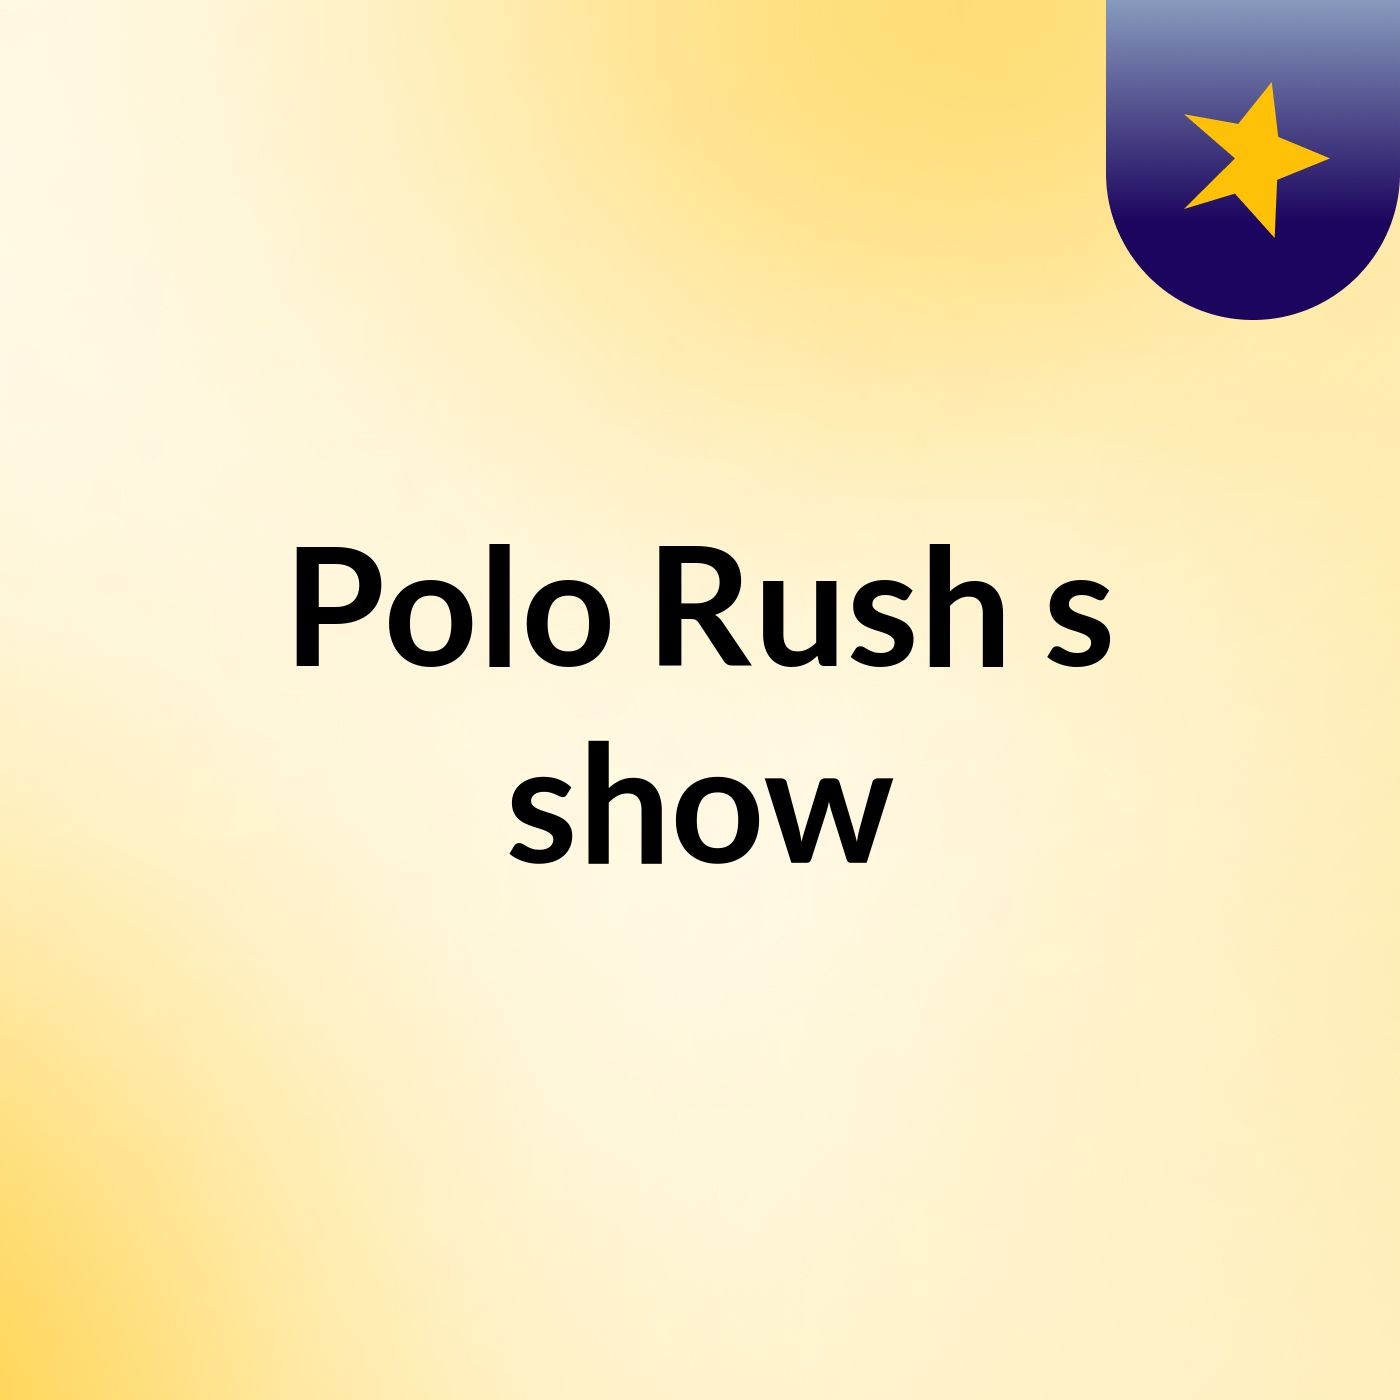 Polo Rush's show